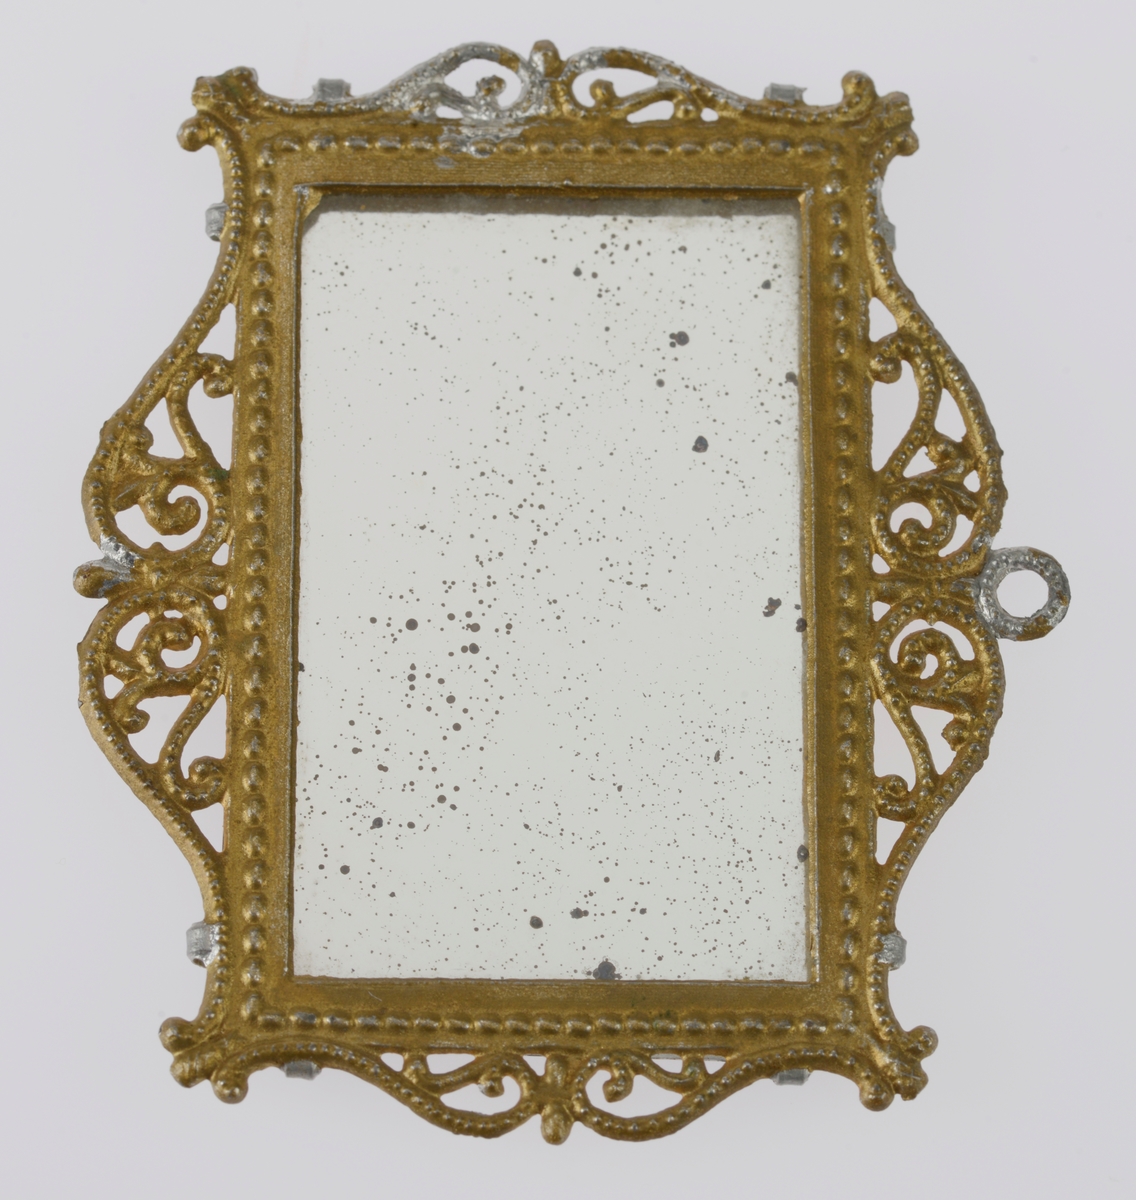 Et lite speil med ramme av gullforgylt metall. Metallet er ganske mykt. Rammen har dekor i form av snirklete mønster. Glasset er festet med fire små metallklemmer. Speilet har antageligvis vært i et dukkehus.